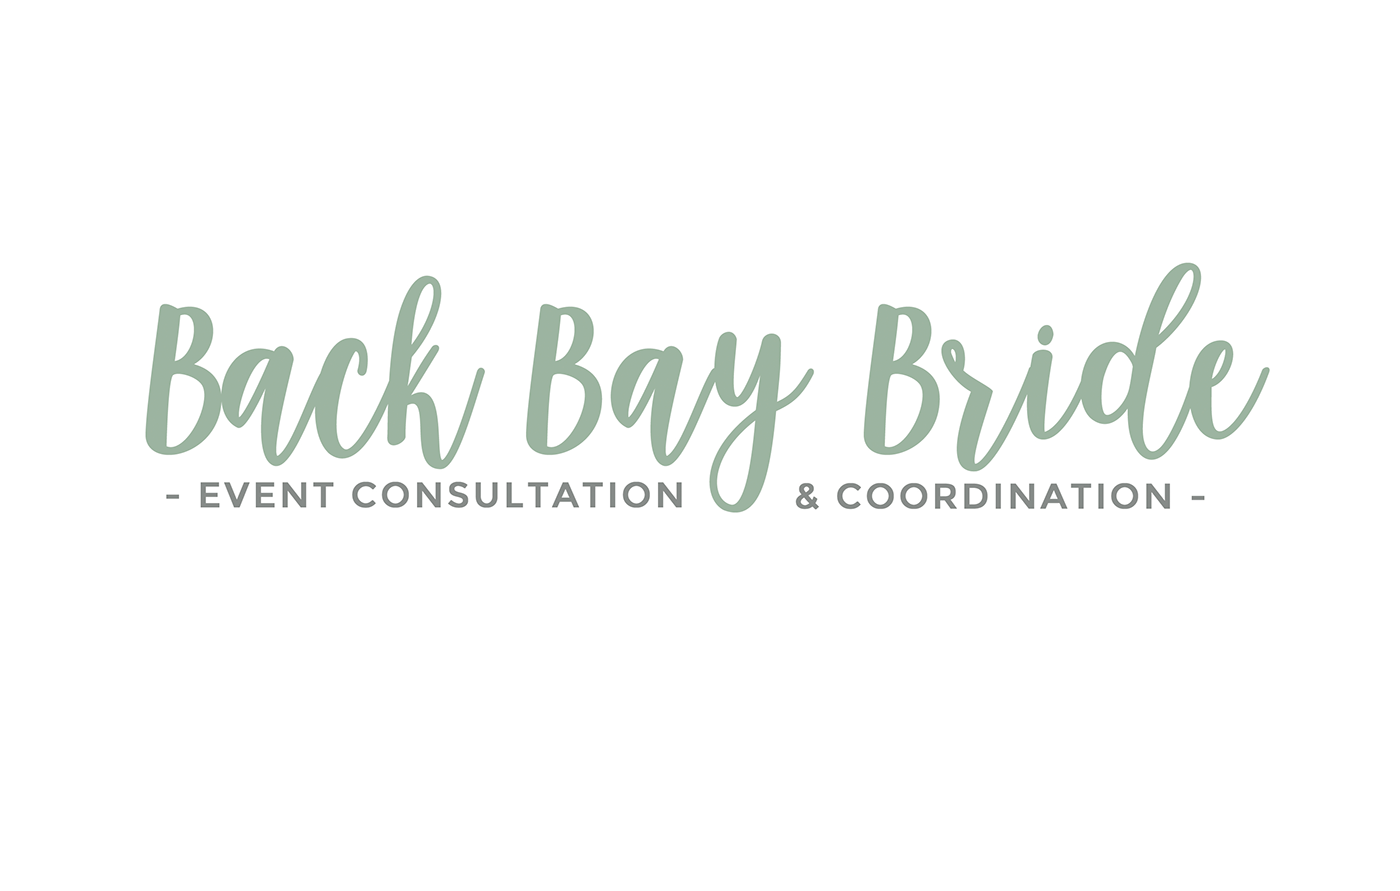 back bay bride central ma creative logo graphic design  Web Design 